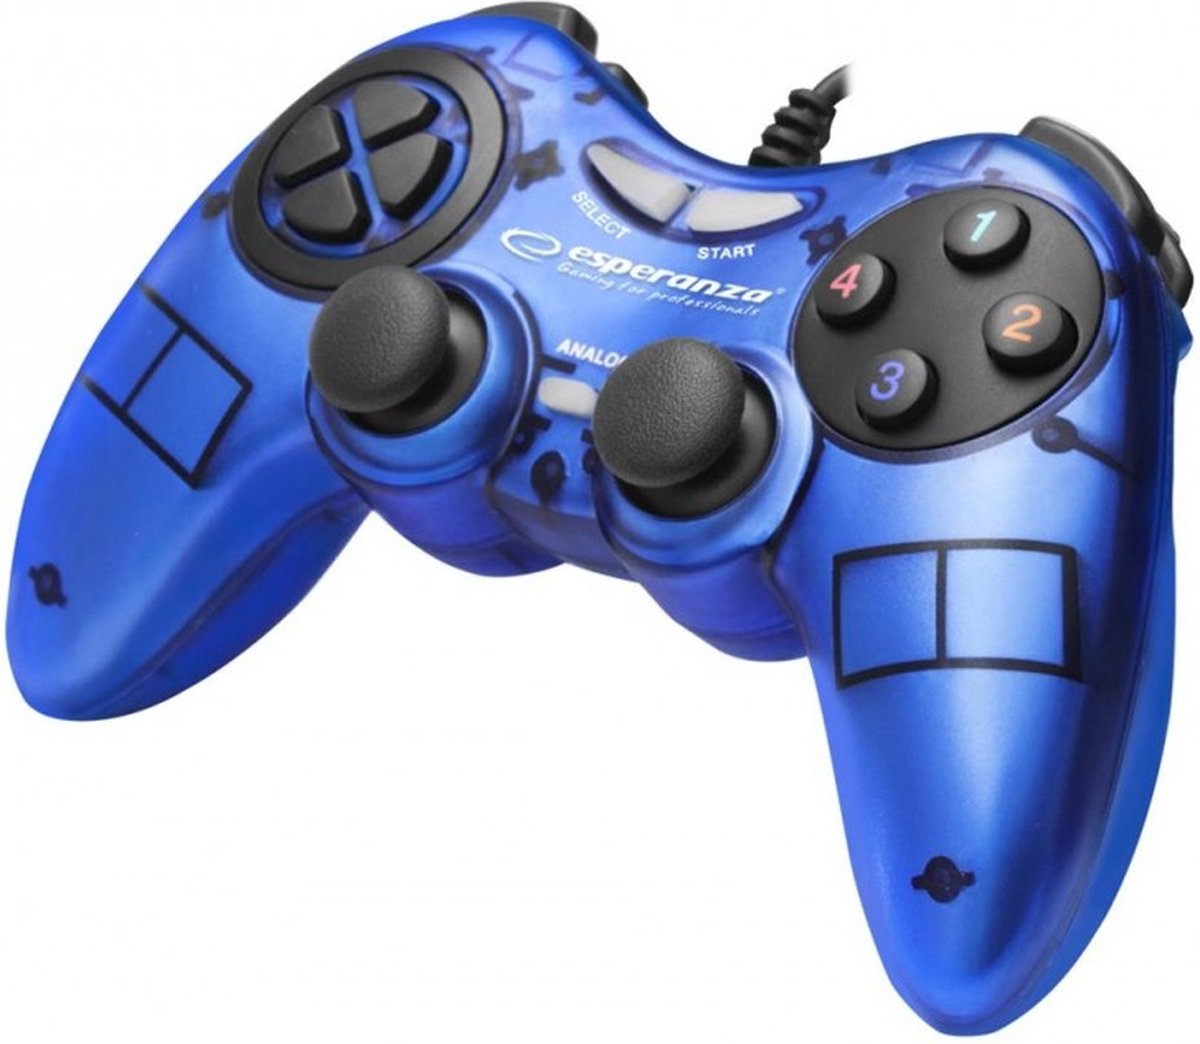 Esperanza Fighter controller Bedrade Vibratie Gamepad voor PC blauw EGG105B